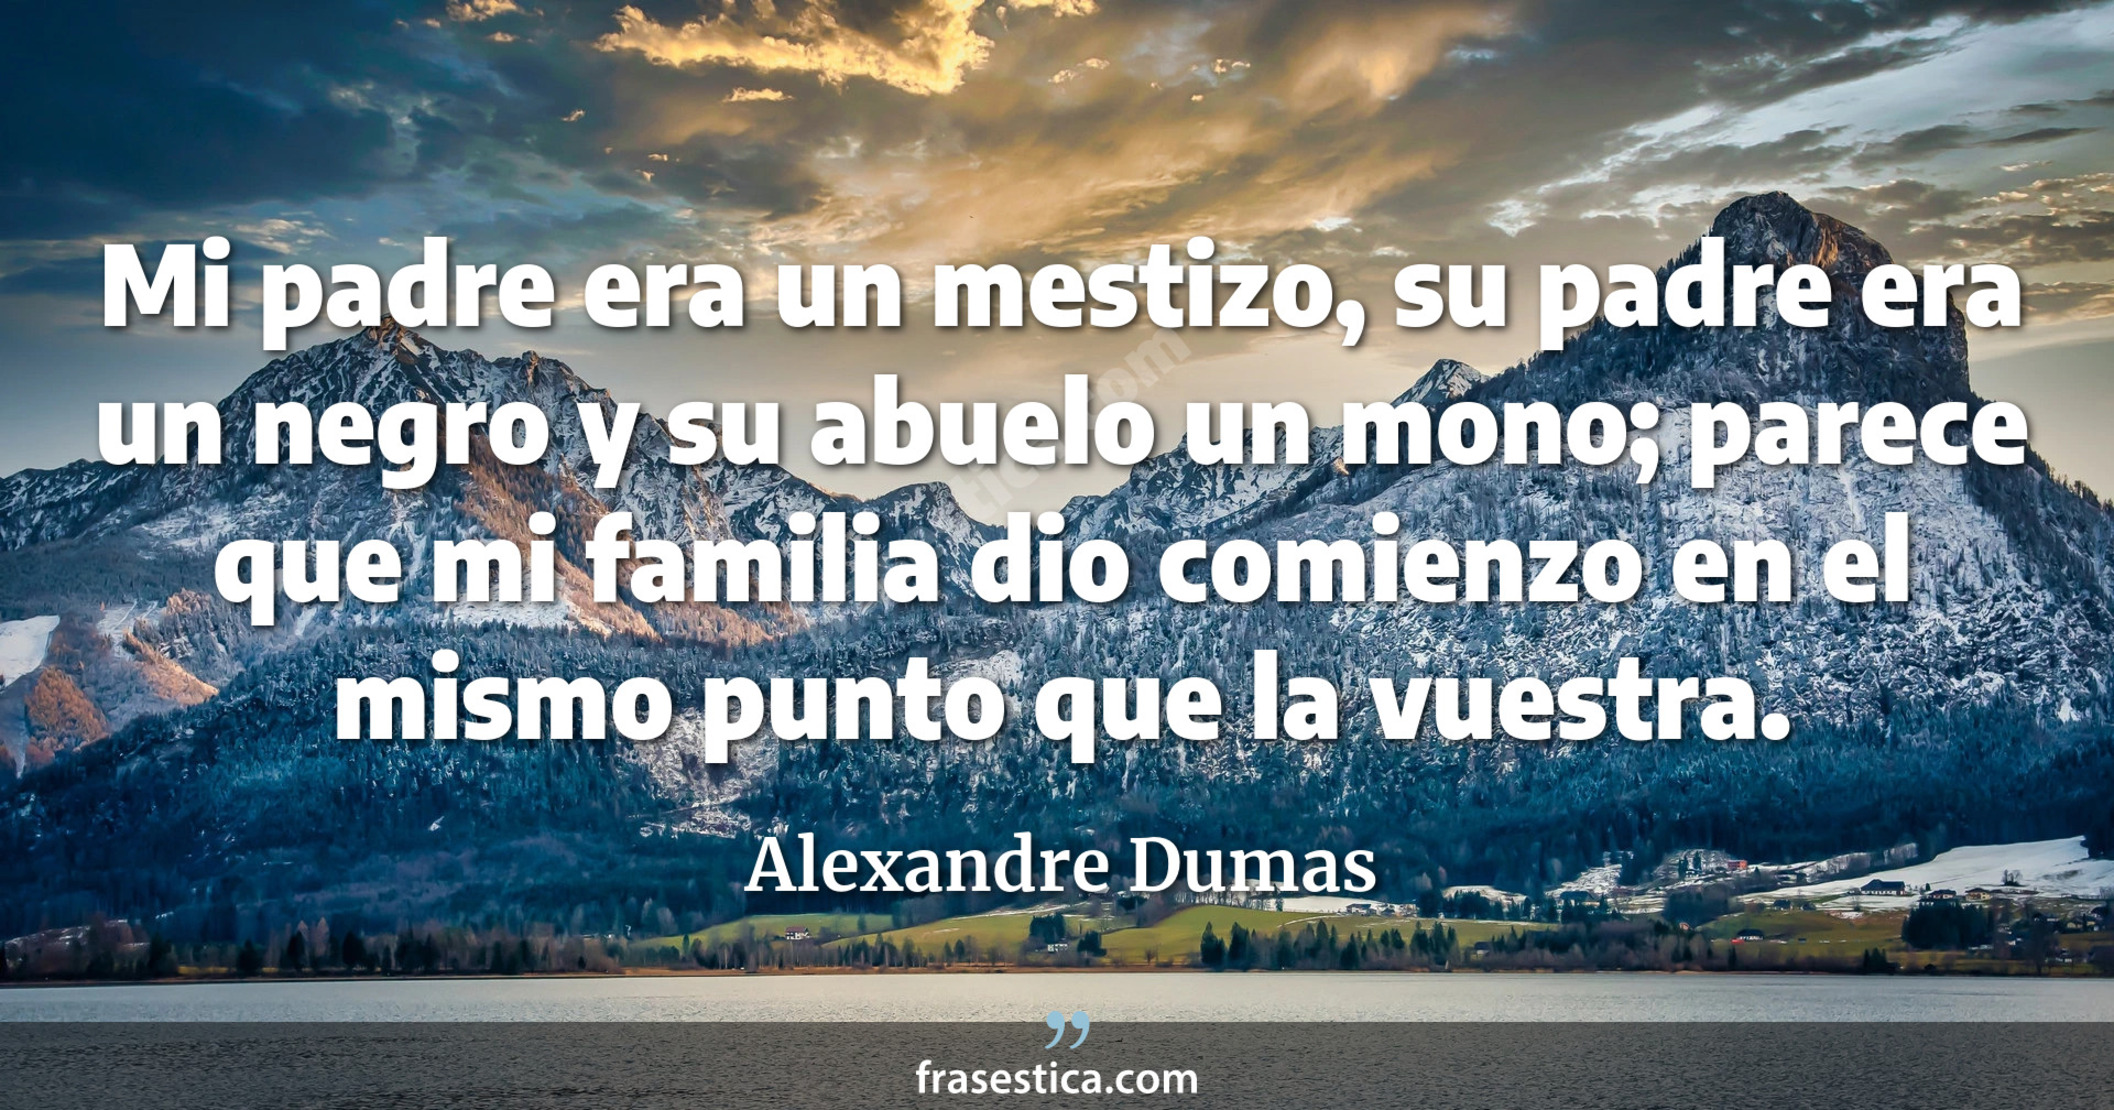 Mi padre era un mestizo, su padre era un negro y su abuelo un mono; parece que mi familia dio comienzo en el mismo punto que la vuestra. - Alexandre Dumas